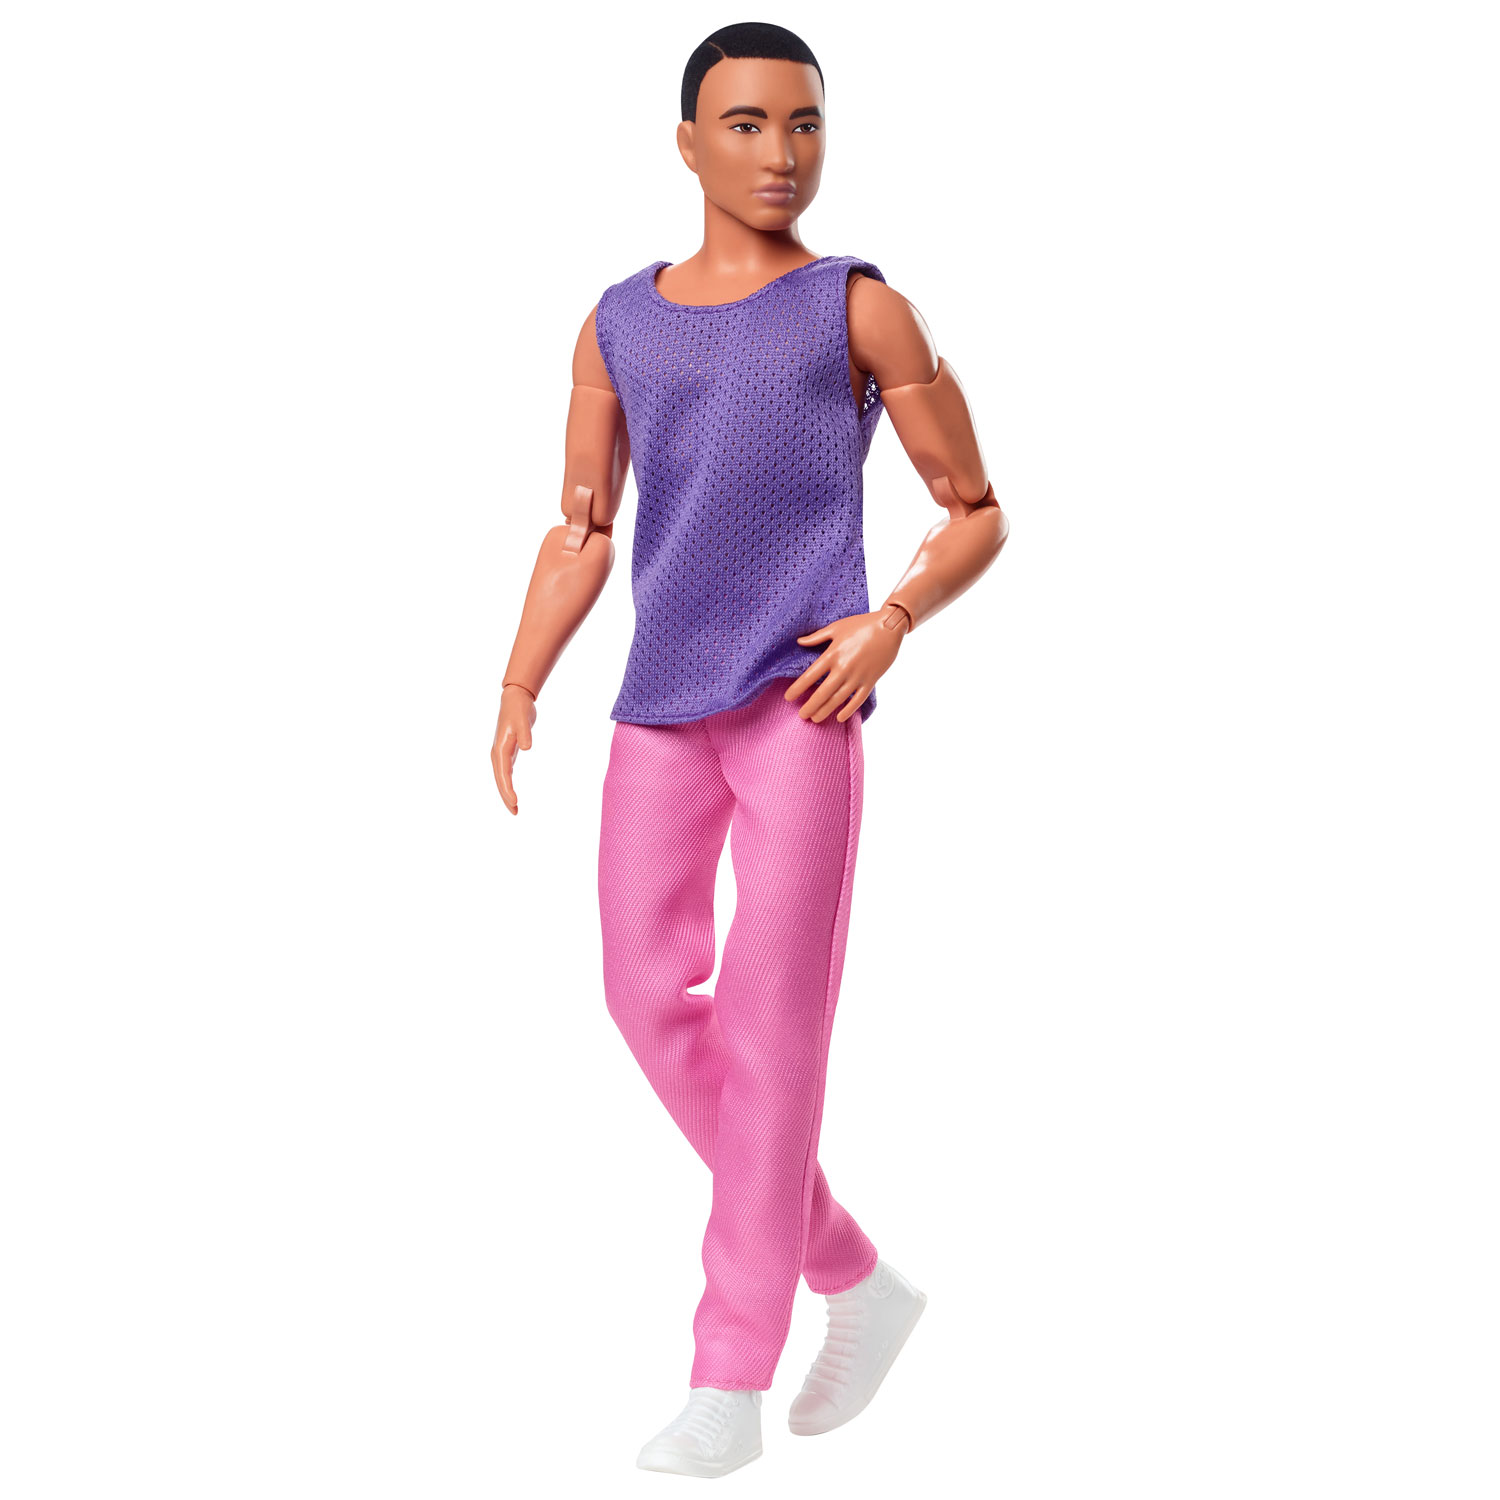 Mattel Barbie Looks: Ken with Purple Shirt Doll